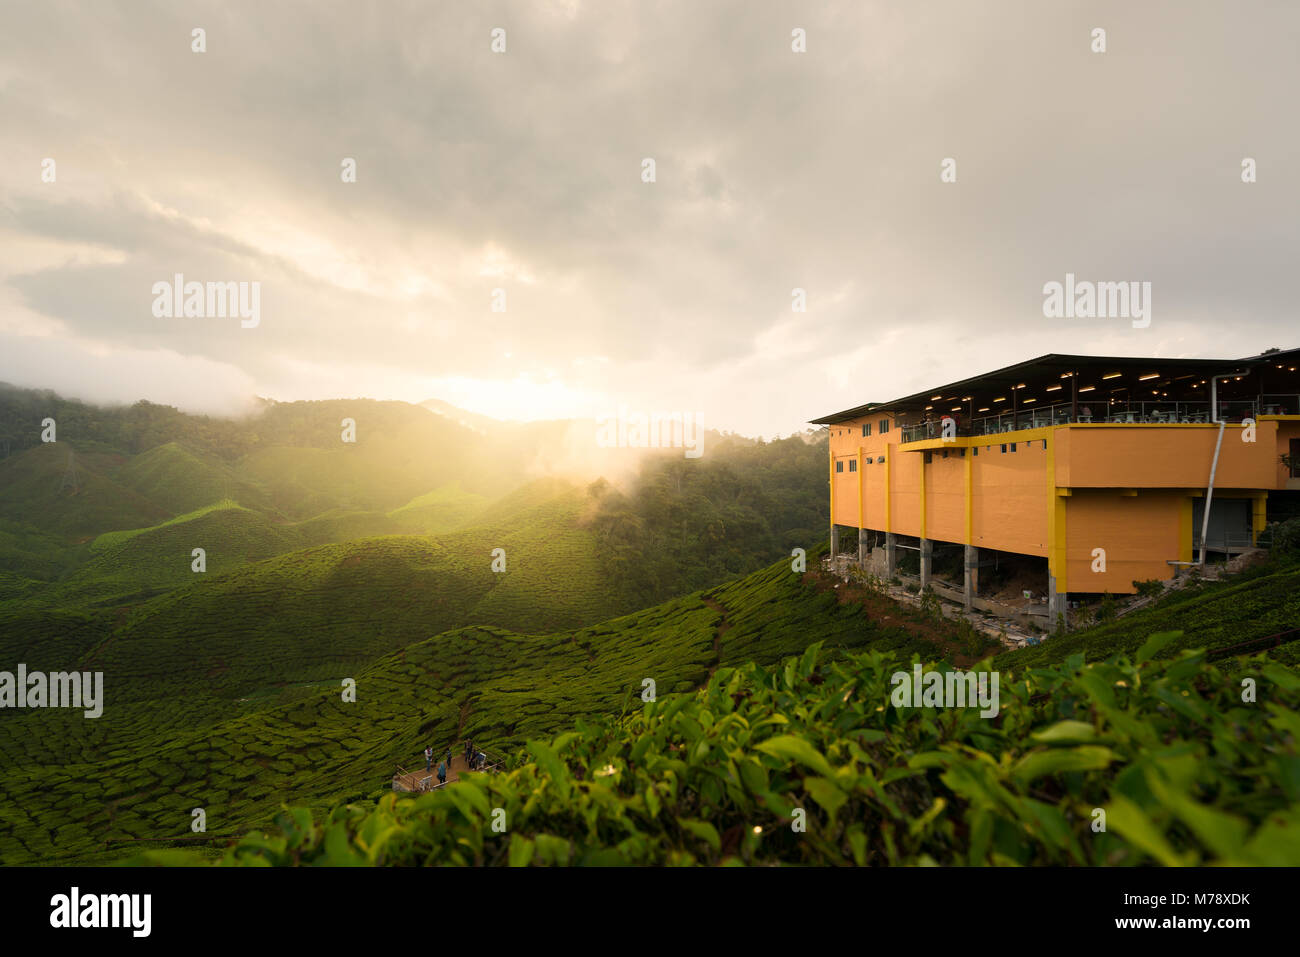 Erstaunlich Malaysia Landschaft. Anzeigen von Tee Plantage im Sonnenuntergang / Sonnenaufgang in Cameron Highlands, Malaysia. Natur Hintergrund mit Nebel. Stockfoto